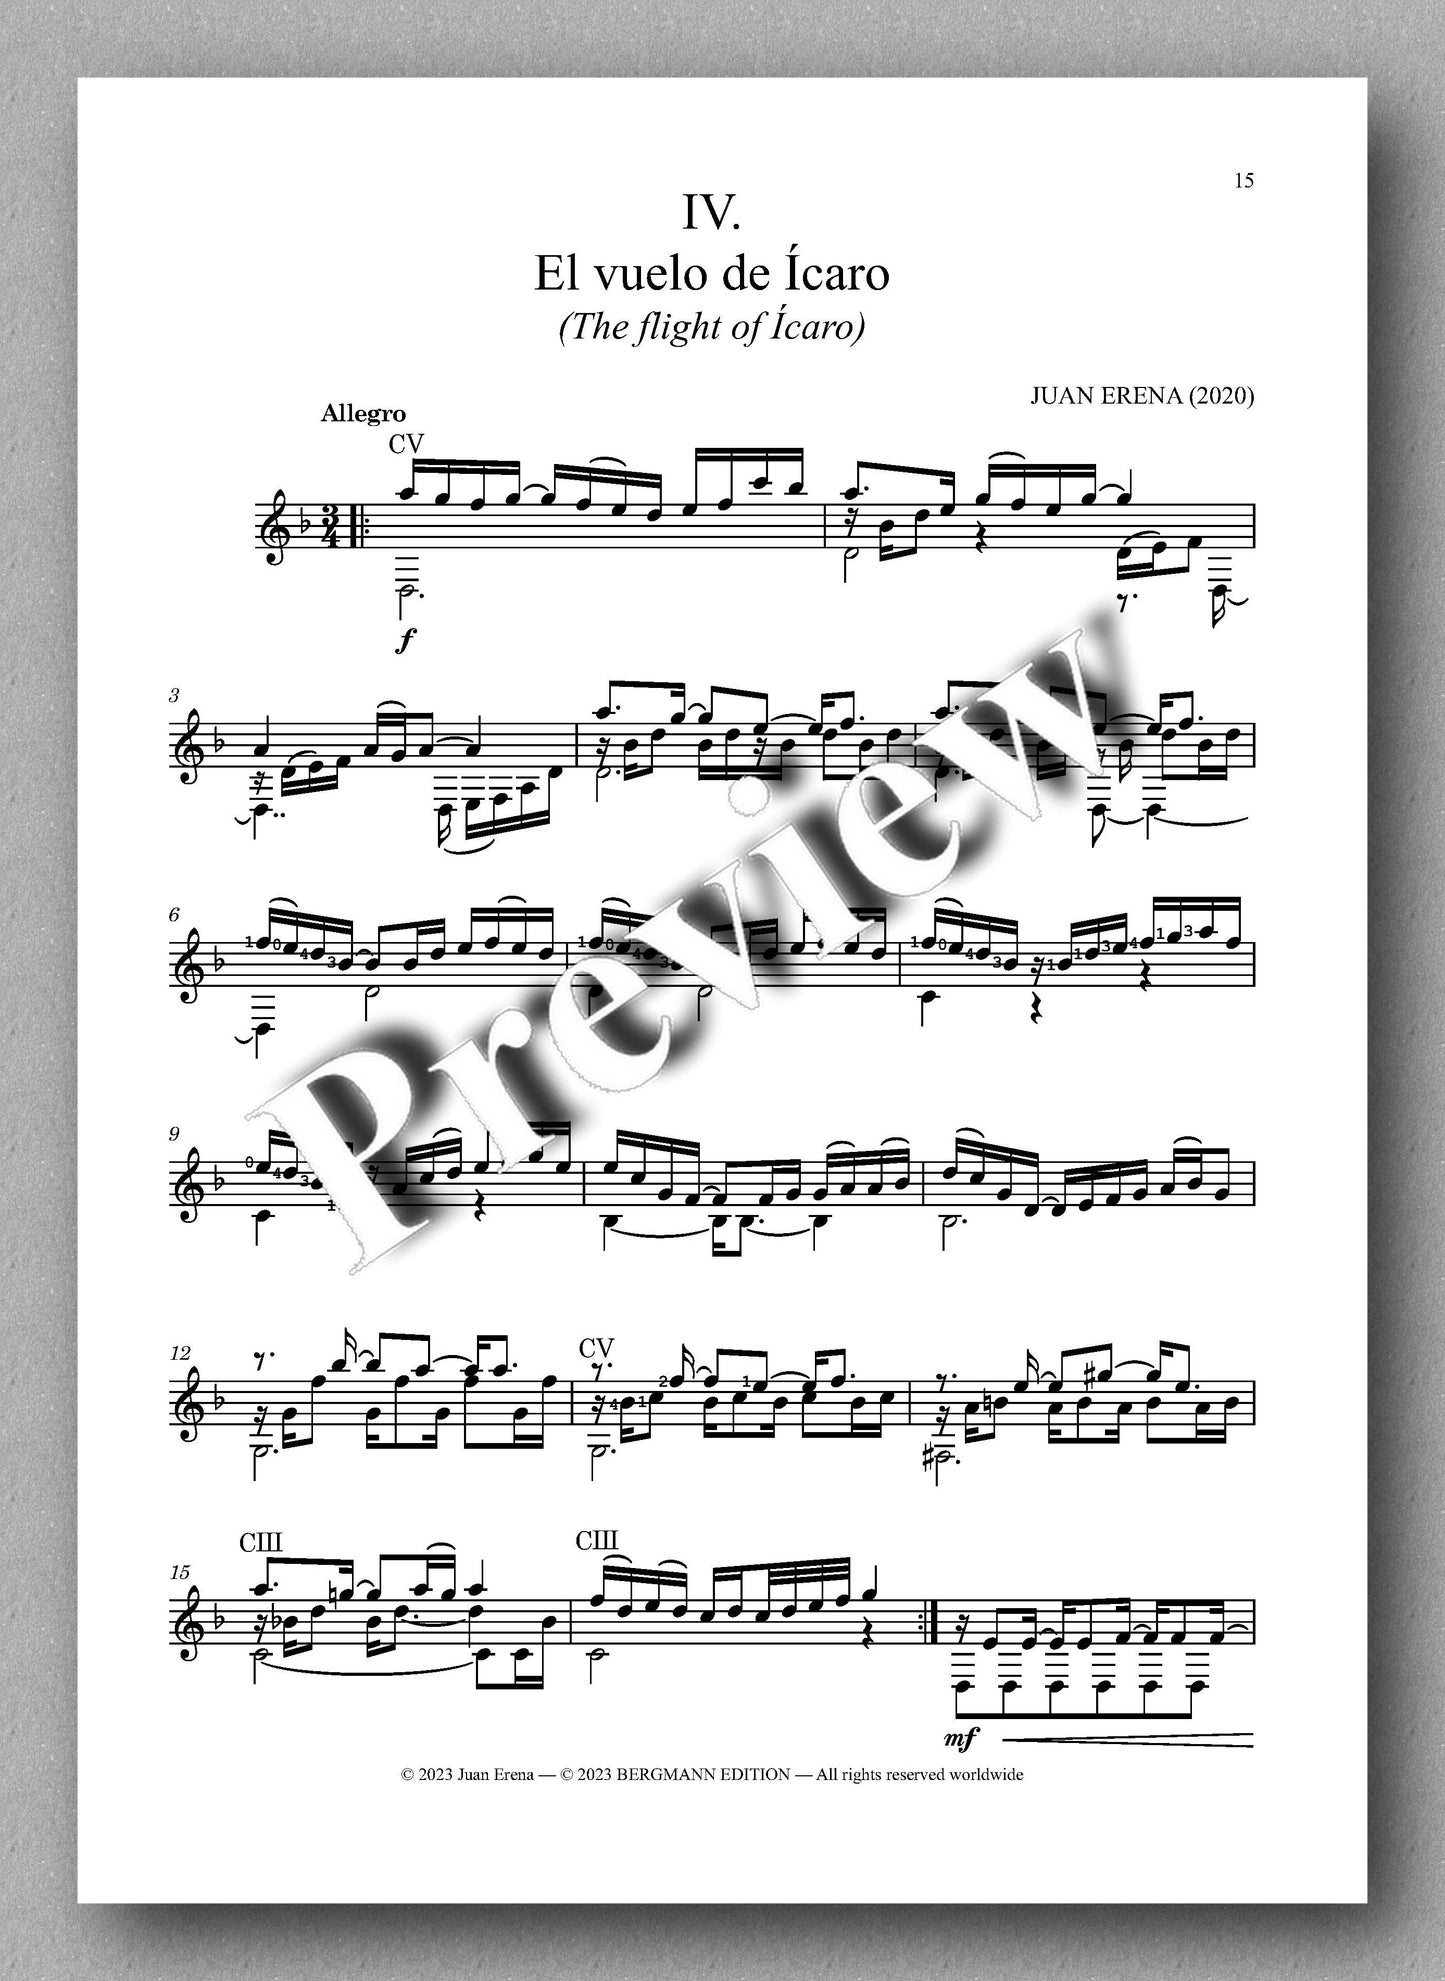 Juan Erena, Sonata IV, (Alas rotas - Broken Wings) - preview of the music score 4